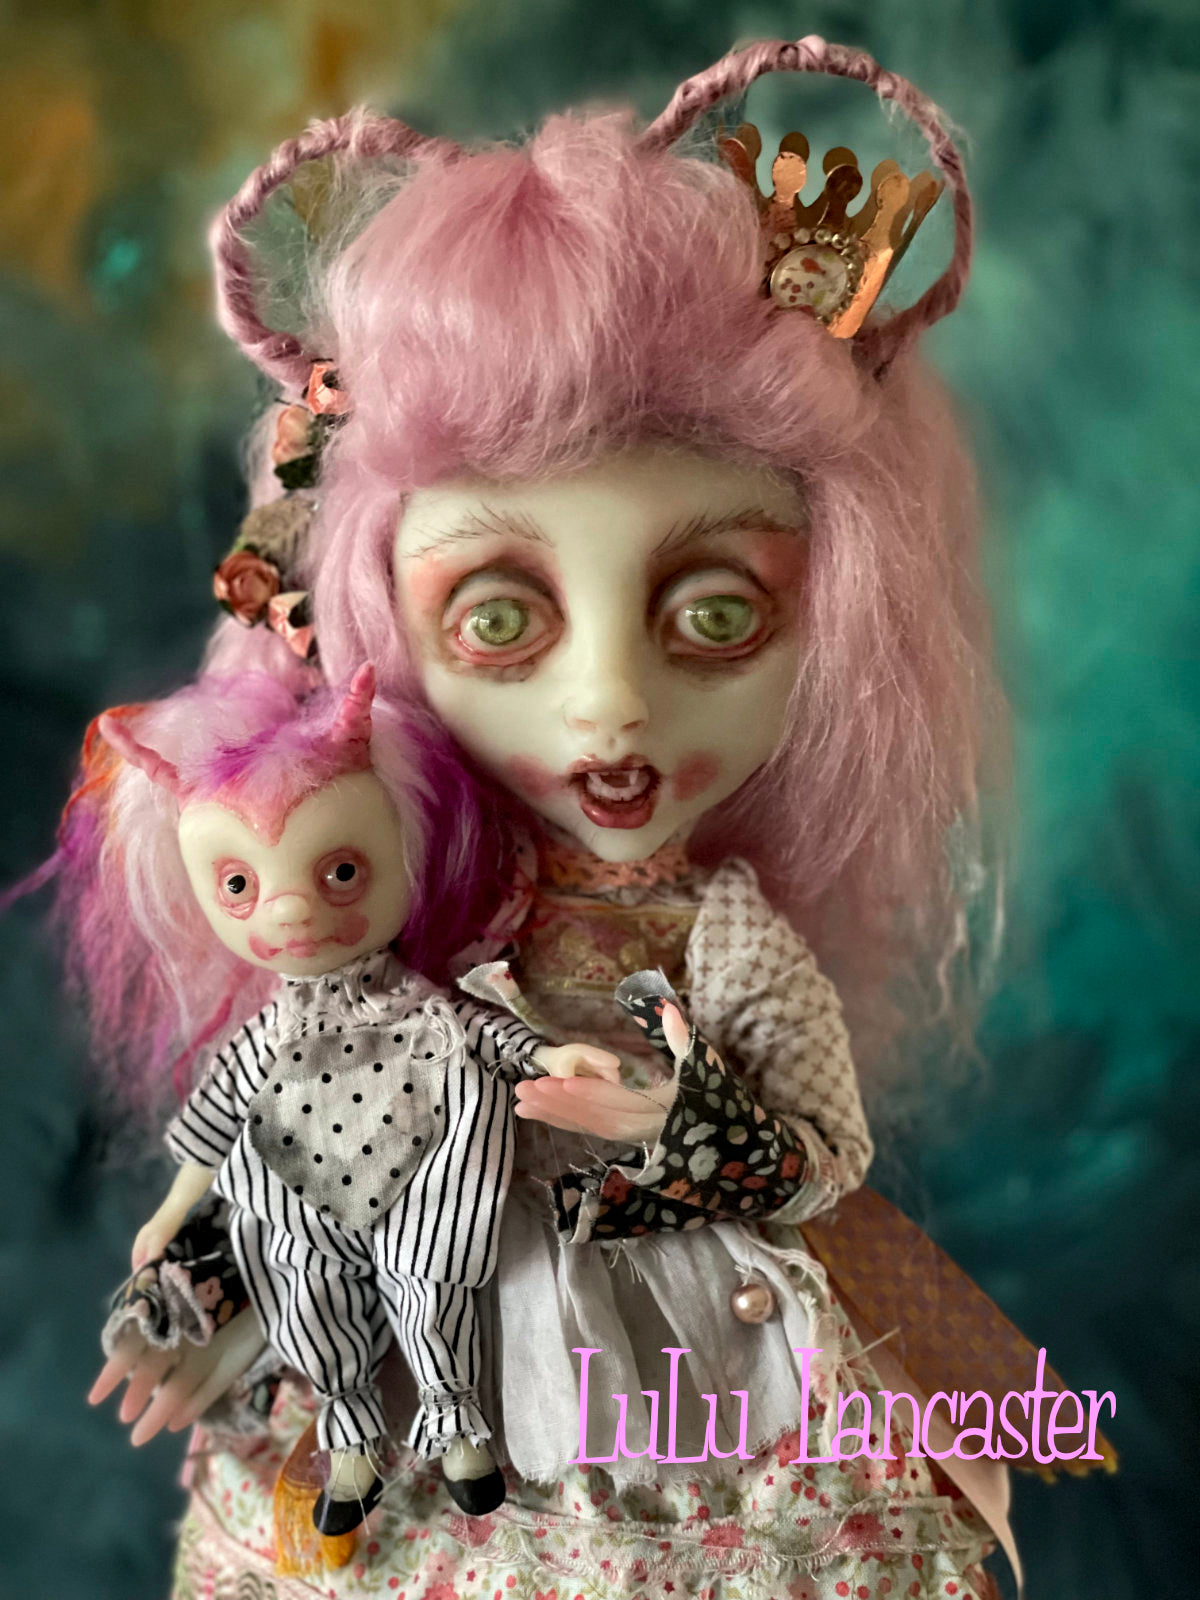 Verina Valentine Valloween Vampire Original LuLu Lancaster Art Doll